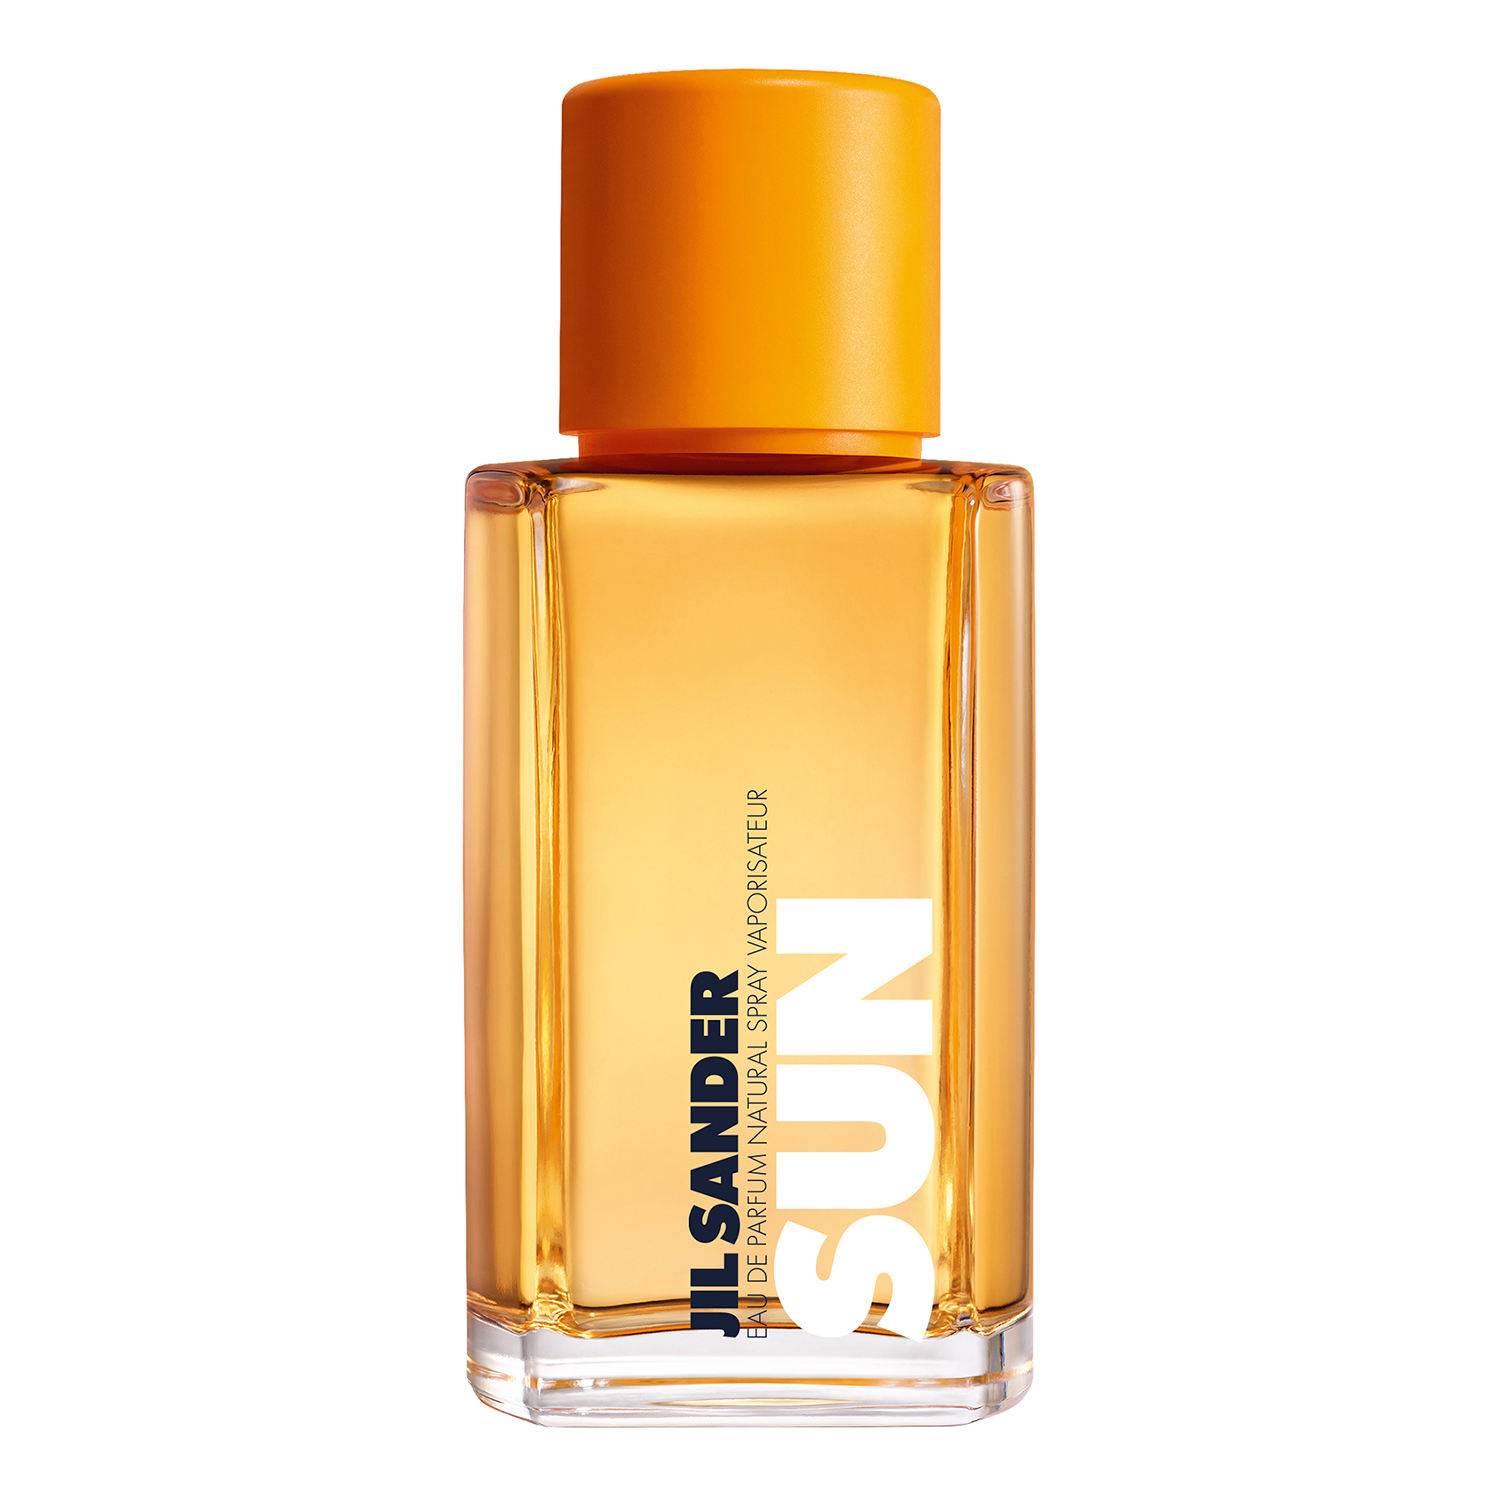 Sun Eau de Parfum Jil Sander parfem - parfem za žene 2020